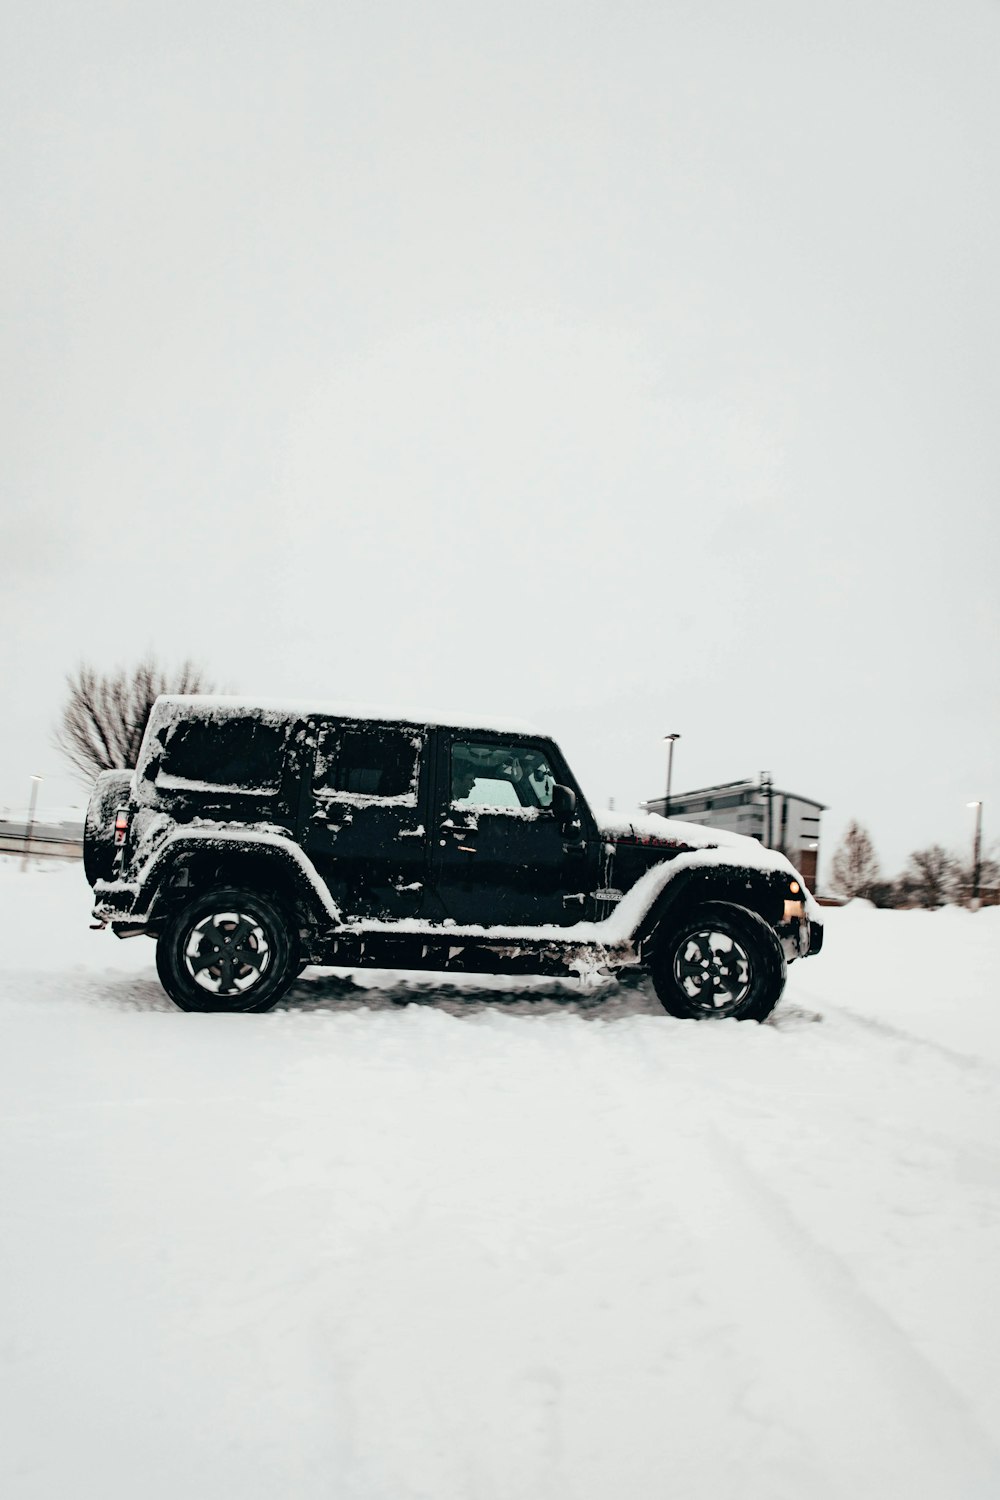 Une jeep noire est garée dans la neige